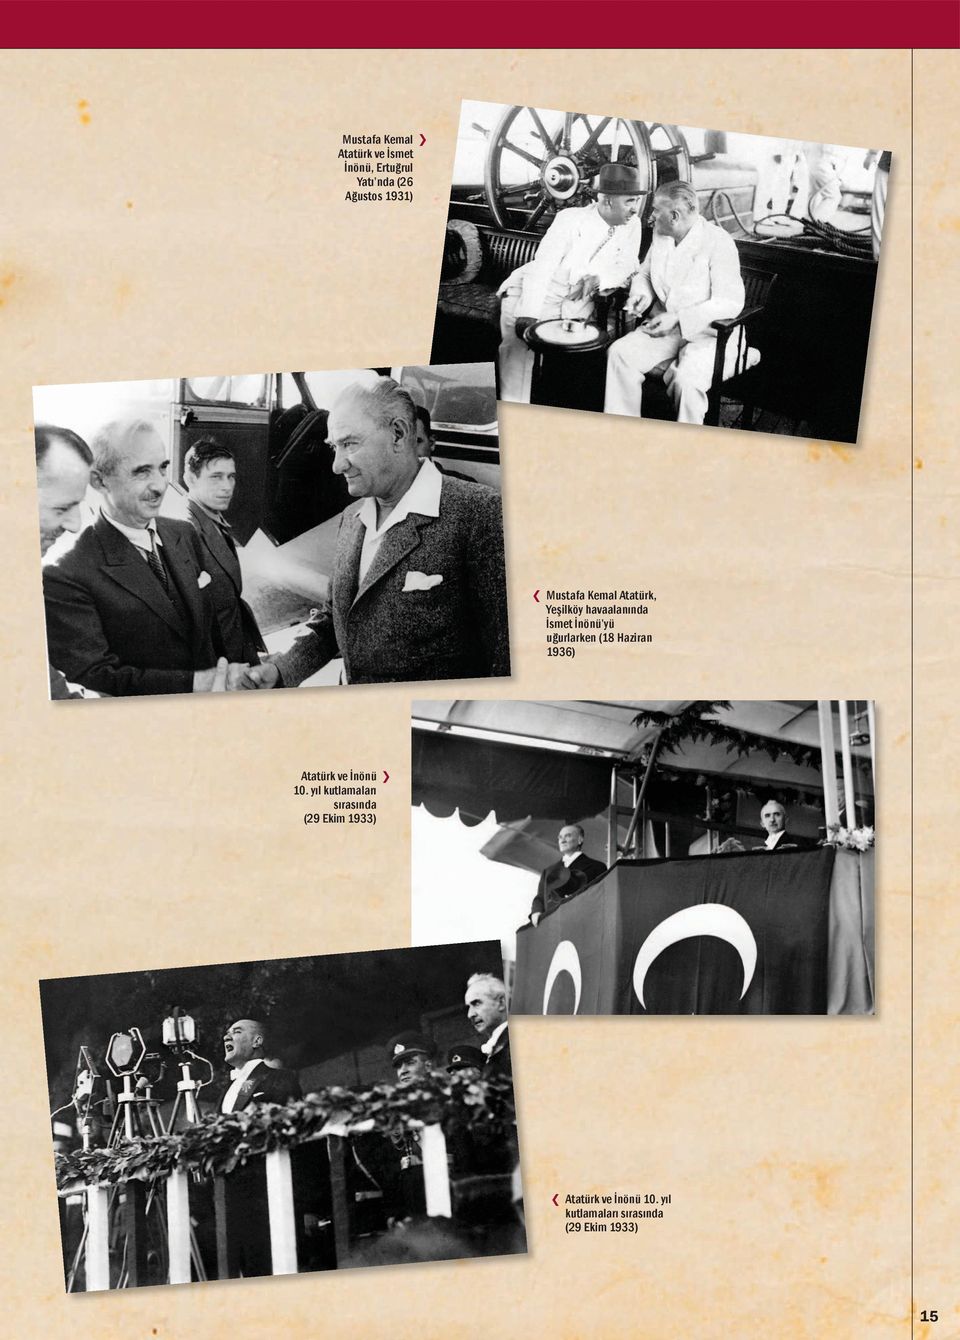 yıl kutlamaları sırasında (29 Ekim 1933) Mustafa Kemal Atatürk, Yeşilköy